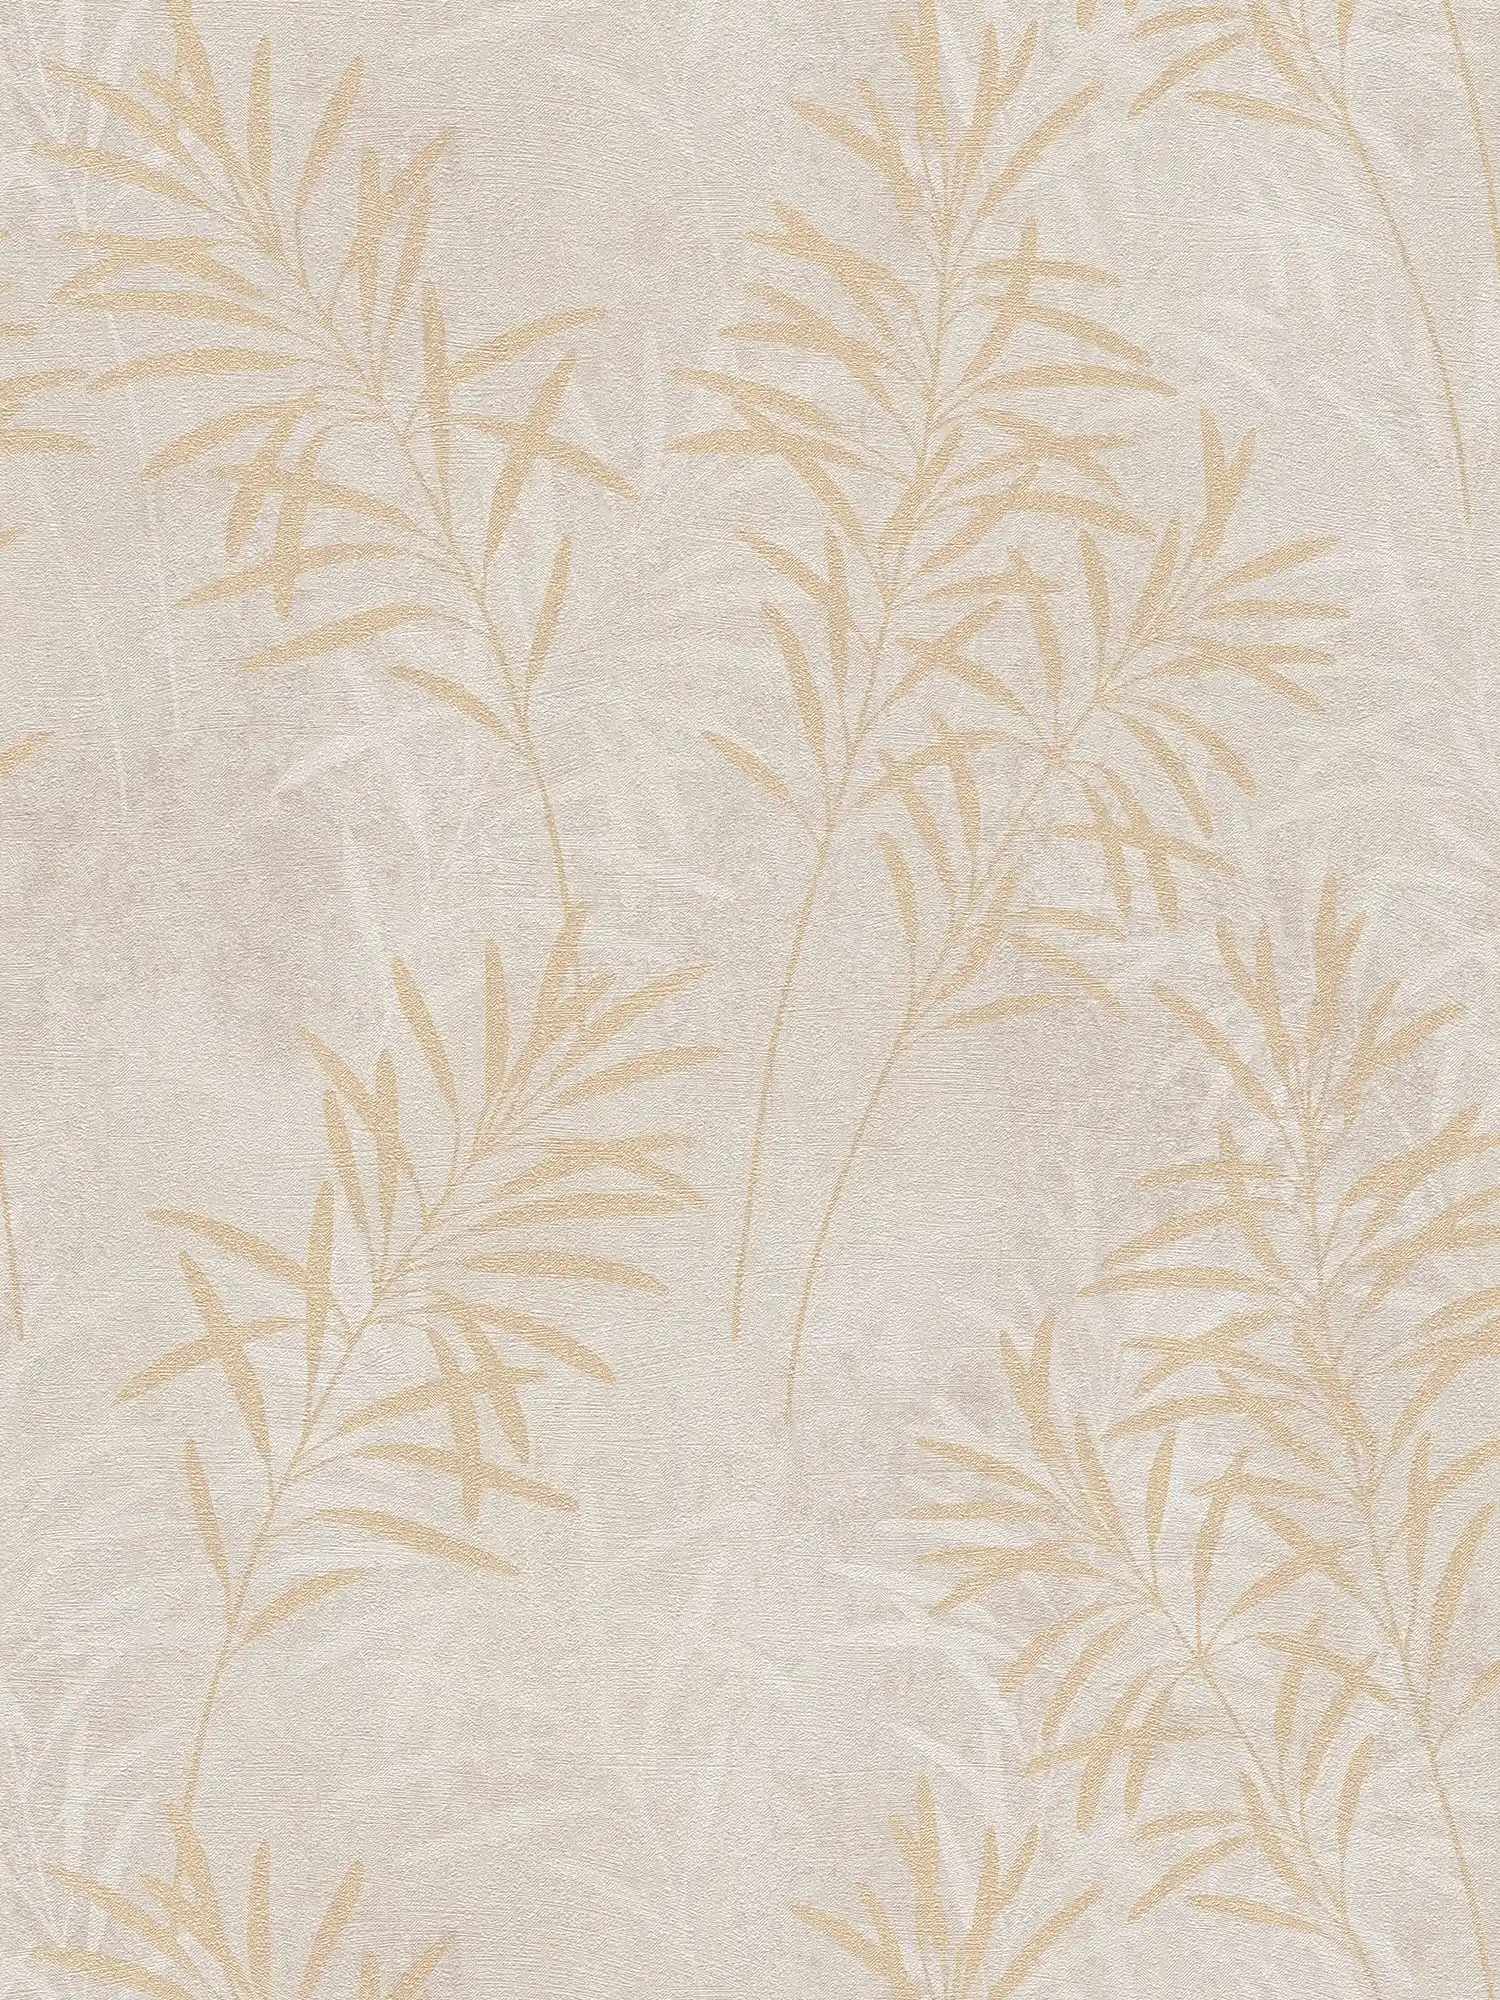             Papel pintado no tejido con motivos florales de palmeras - crema, gris, dorado
        